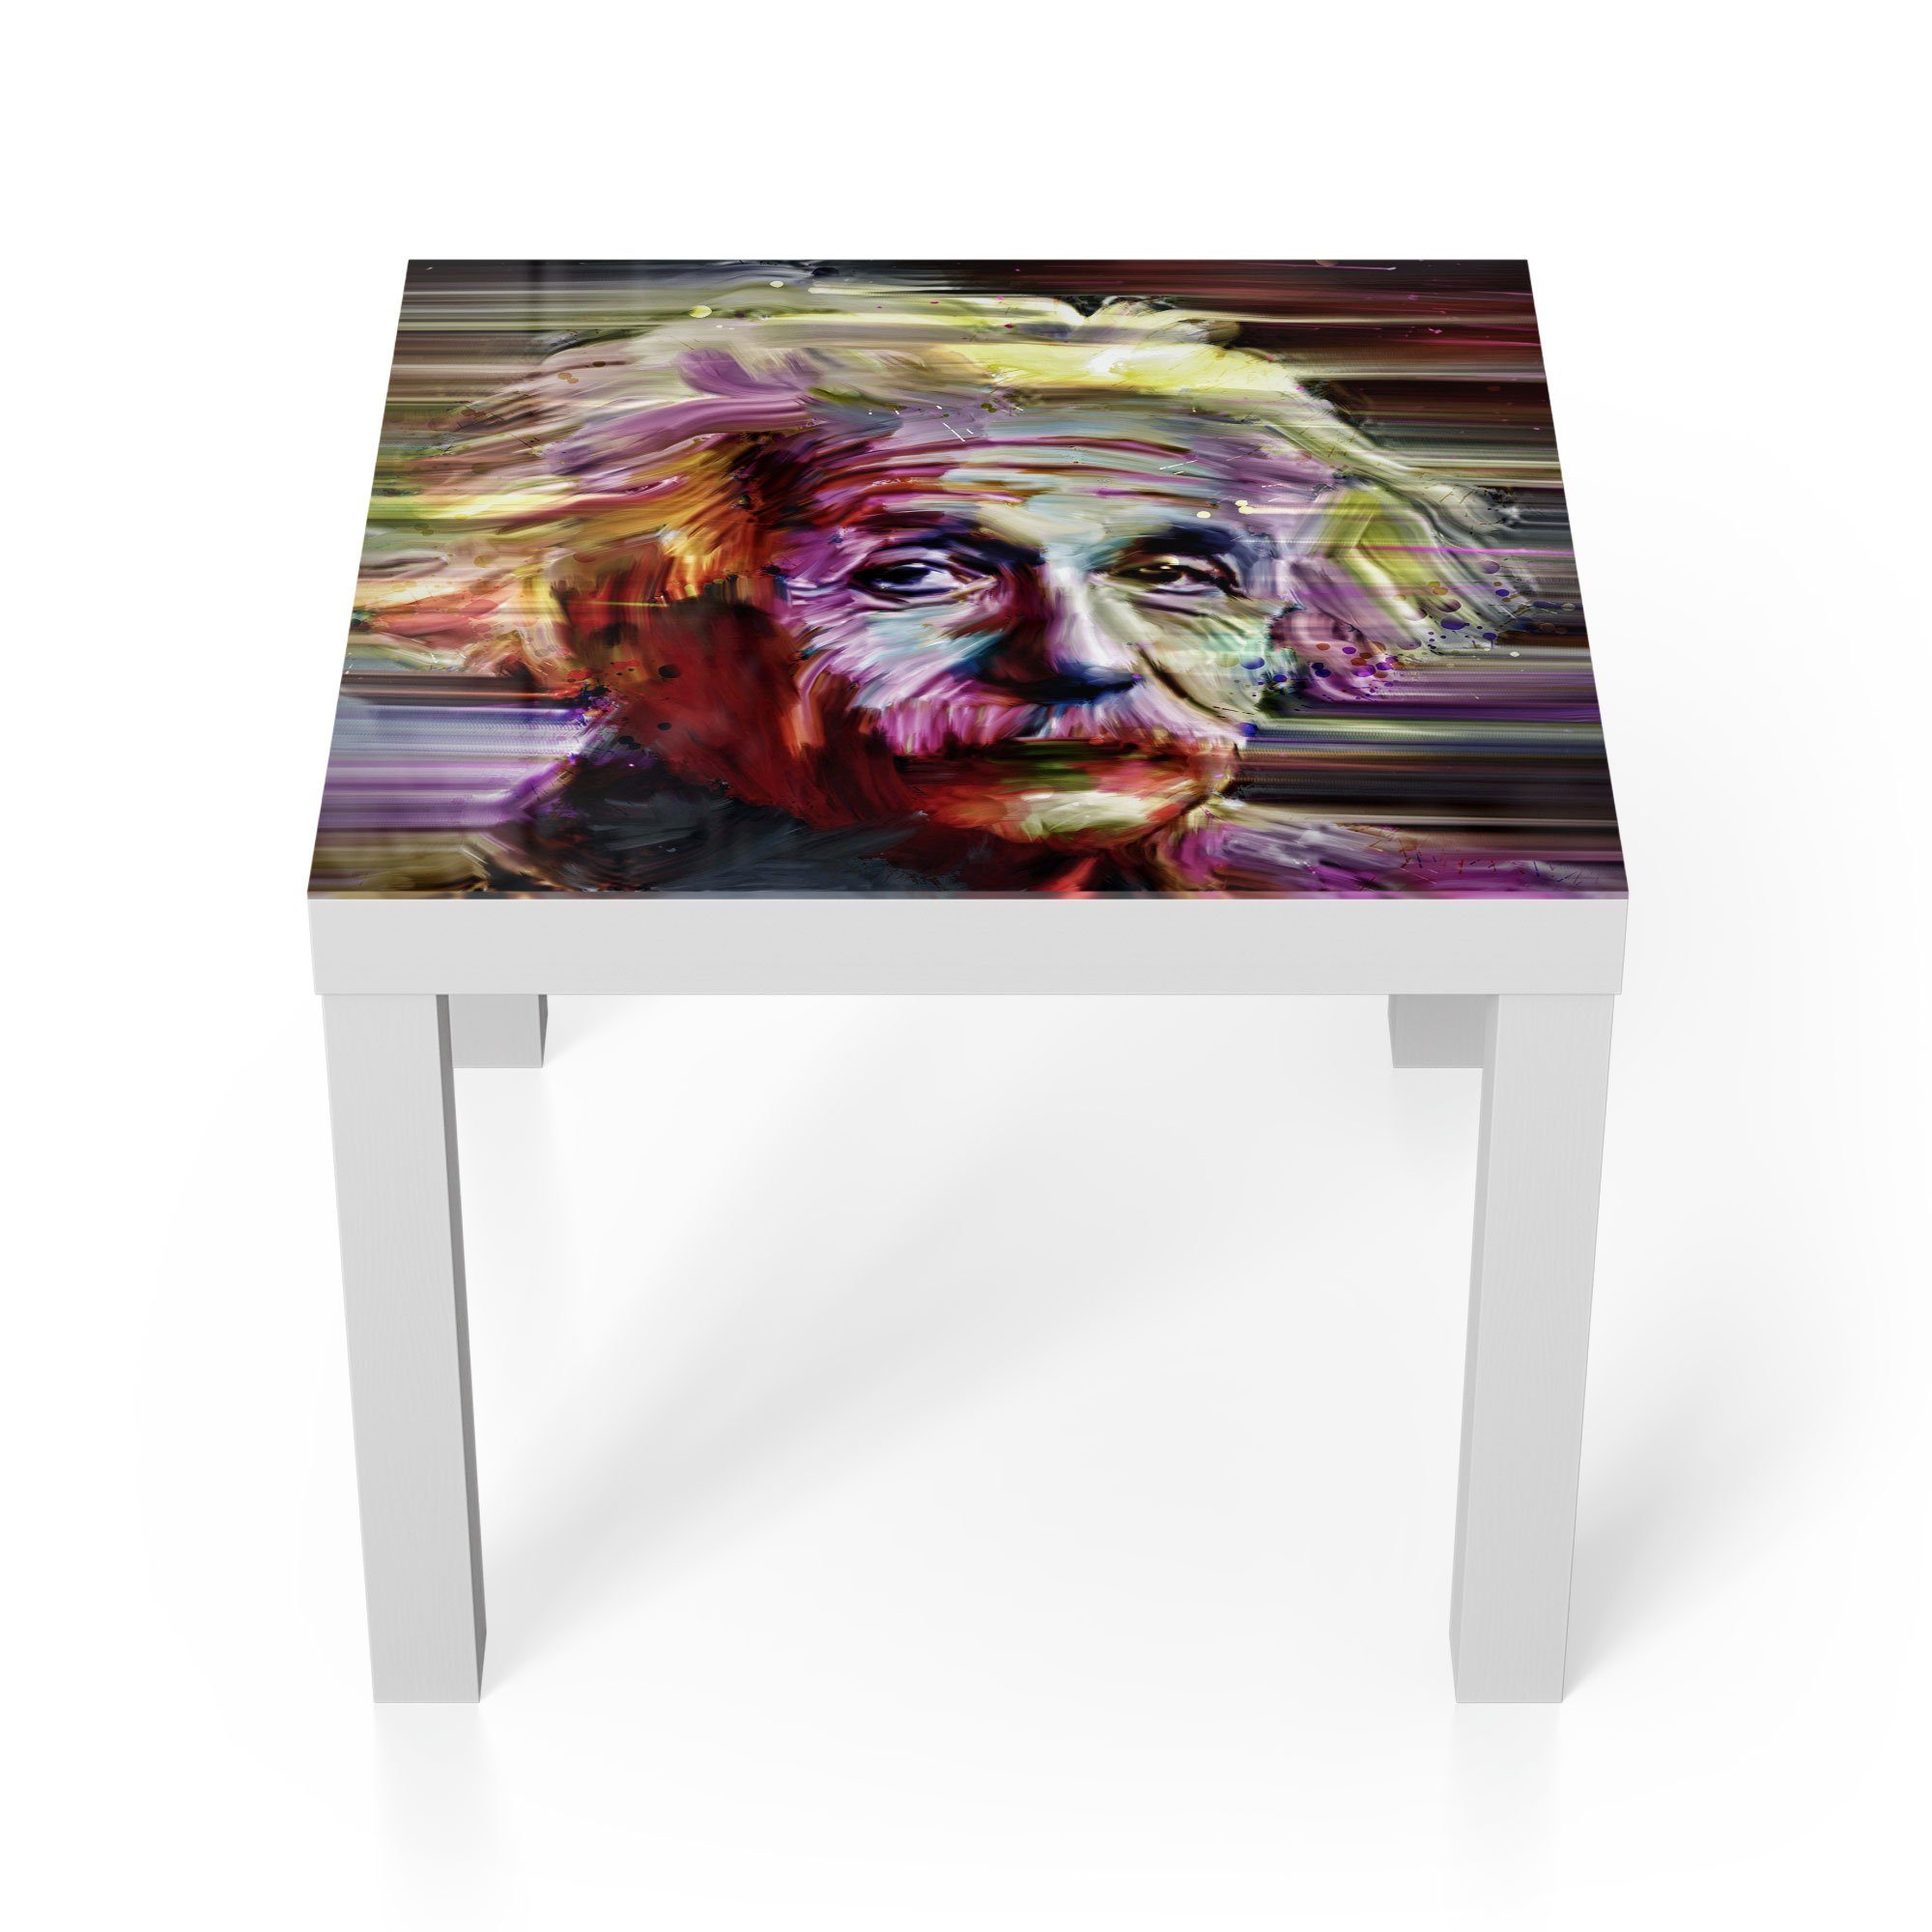 DEQORI Couchtisch 'Albert Einstein Porträt', Glas Beistelltisch Glastisch modern Weiß